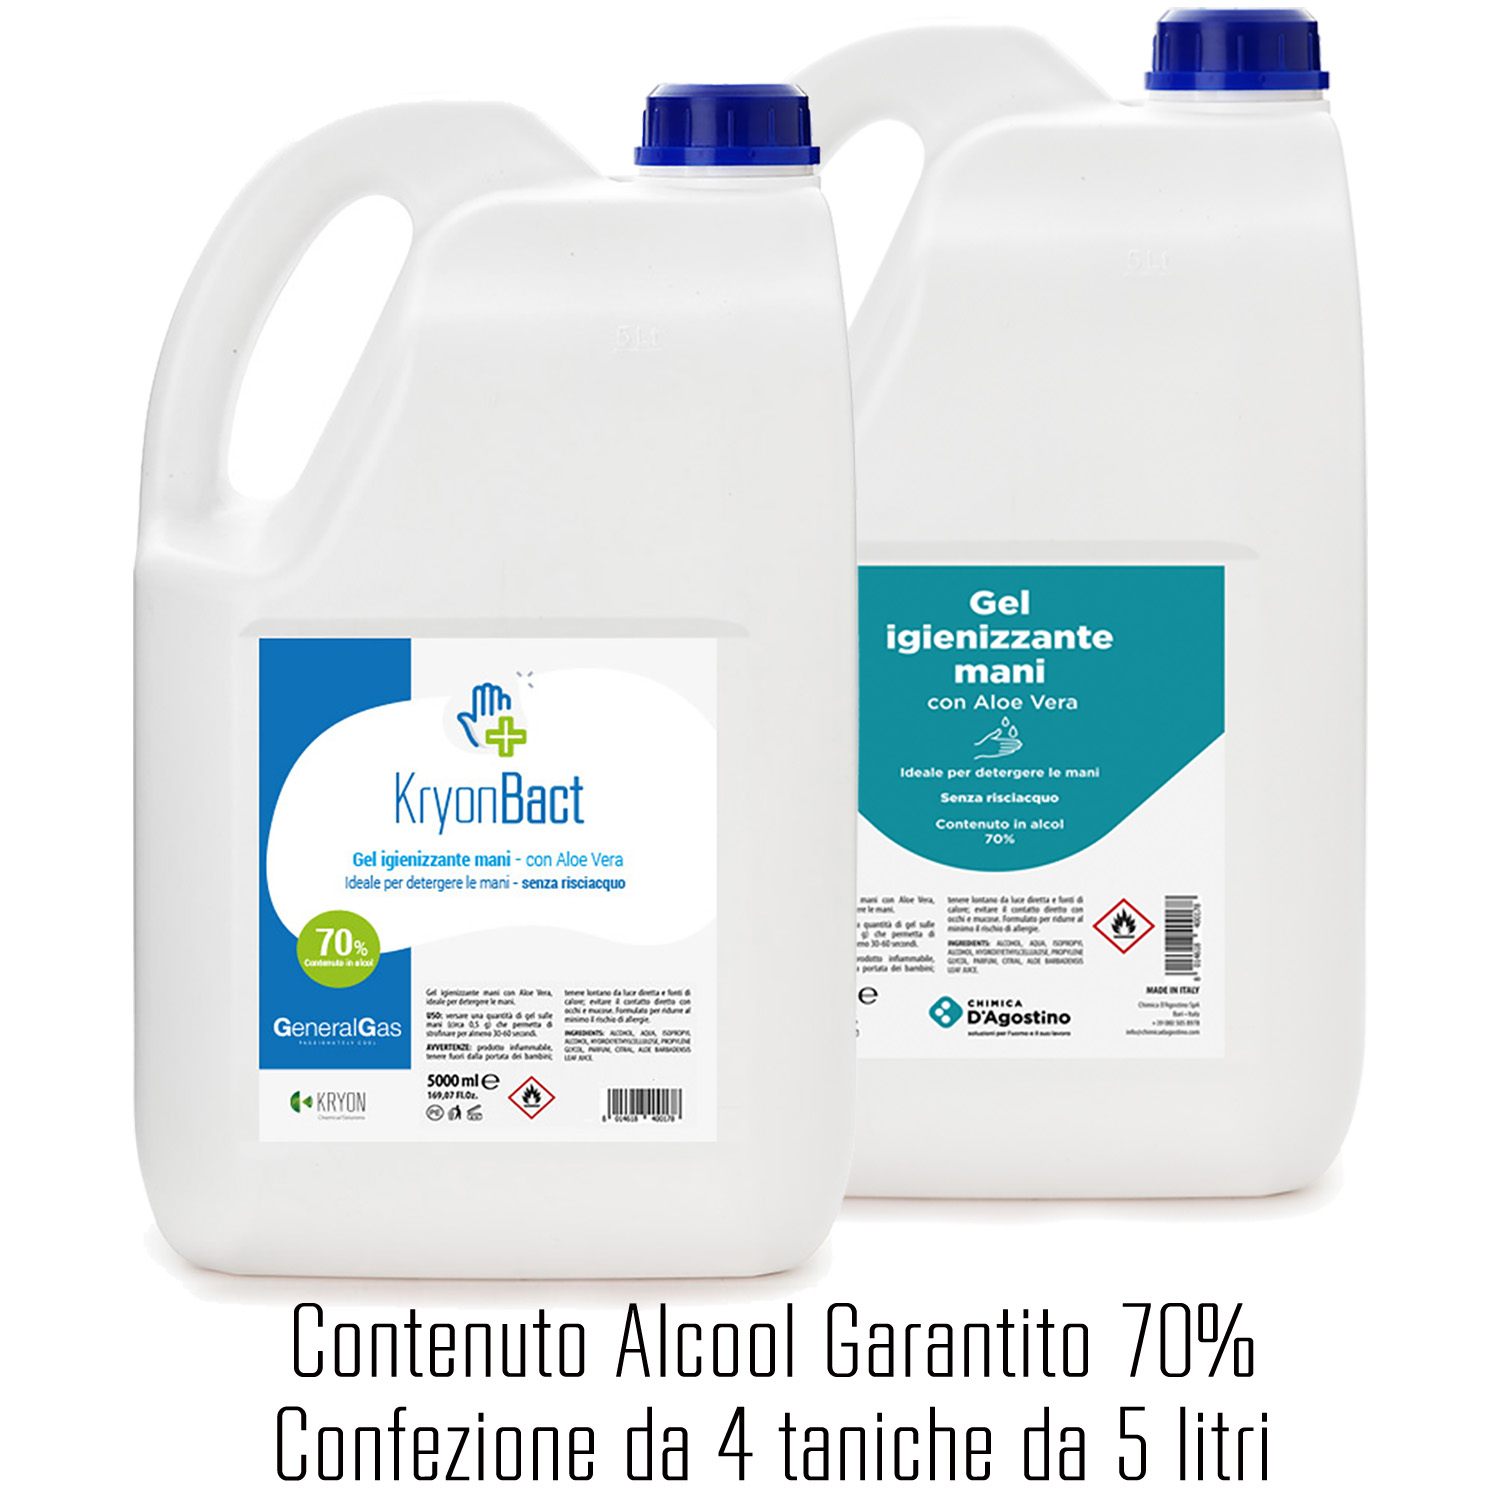 KryonBact 70 - gel igienizzante alcool 70% - tanica 5 litri - confezione 4 taniche